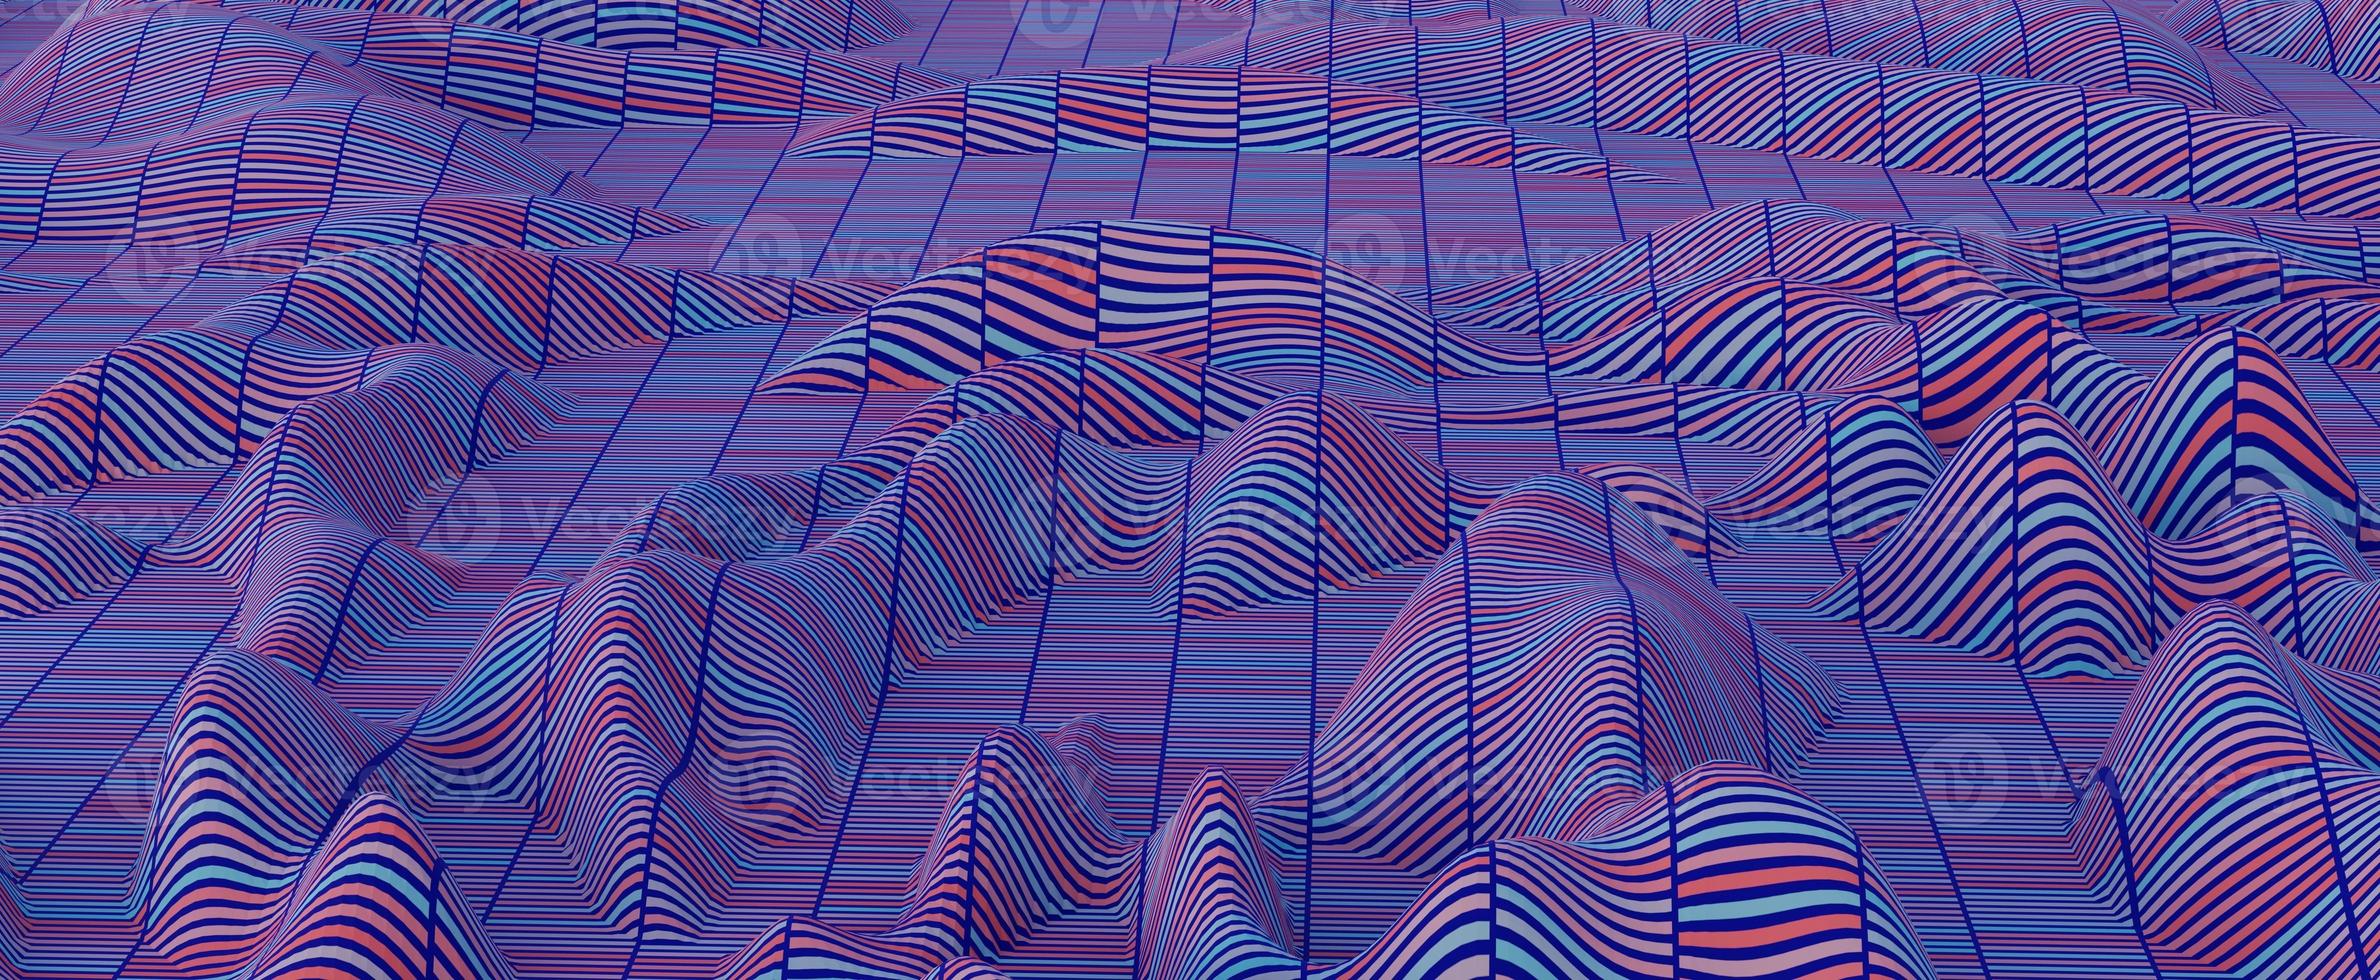 digitale Zusammenfassung bewegt Hügelhintergrund wellenartig. futuristische synthwave-berge auf mesh-oberfläche 3d-rendering mit verzerrung. blaue wellenförmige Texturen mit violetten Streifen und dynamischen Cyberkurven foto